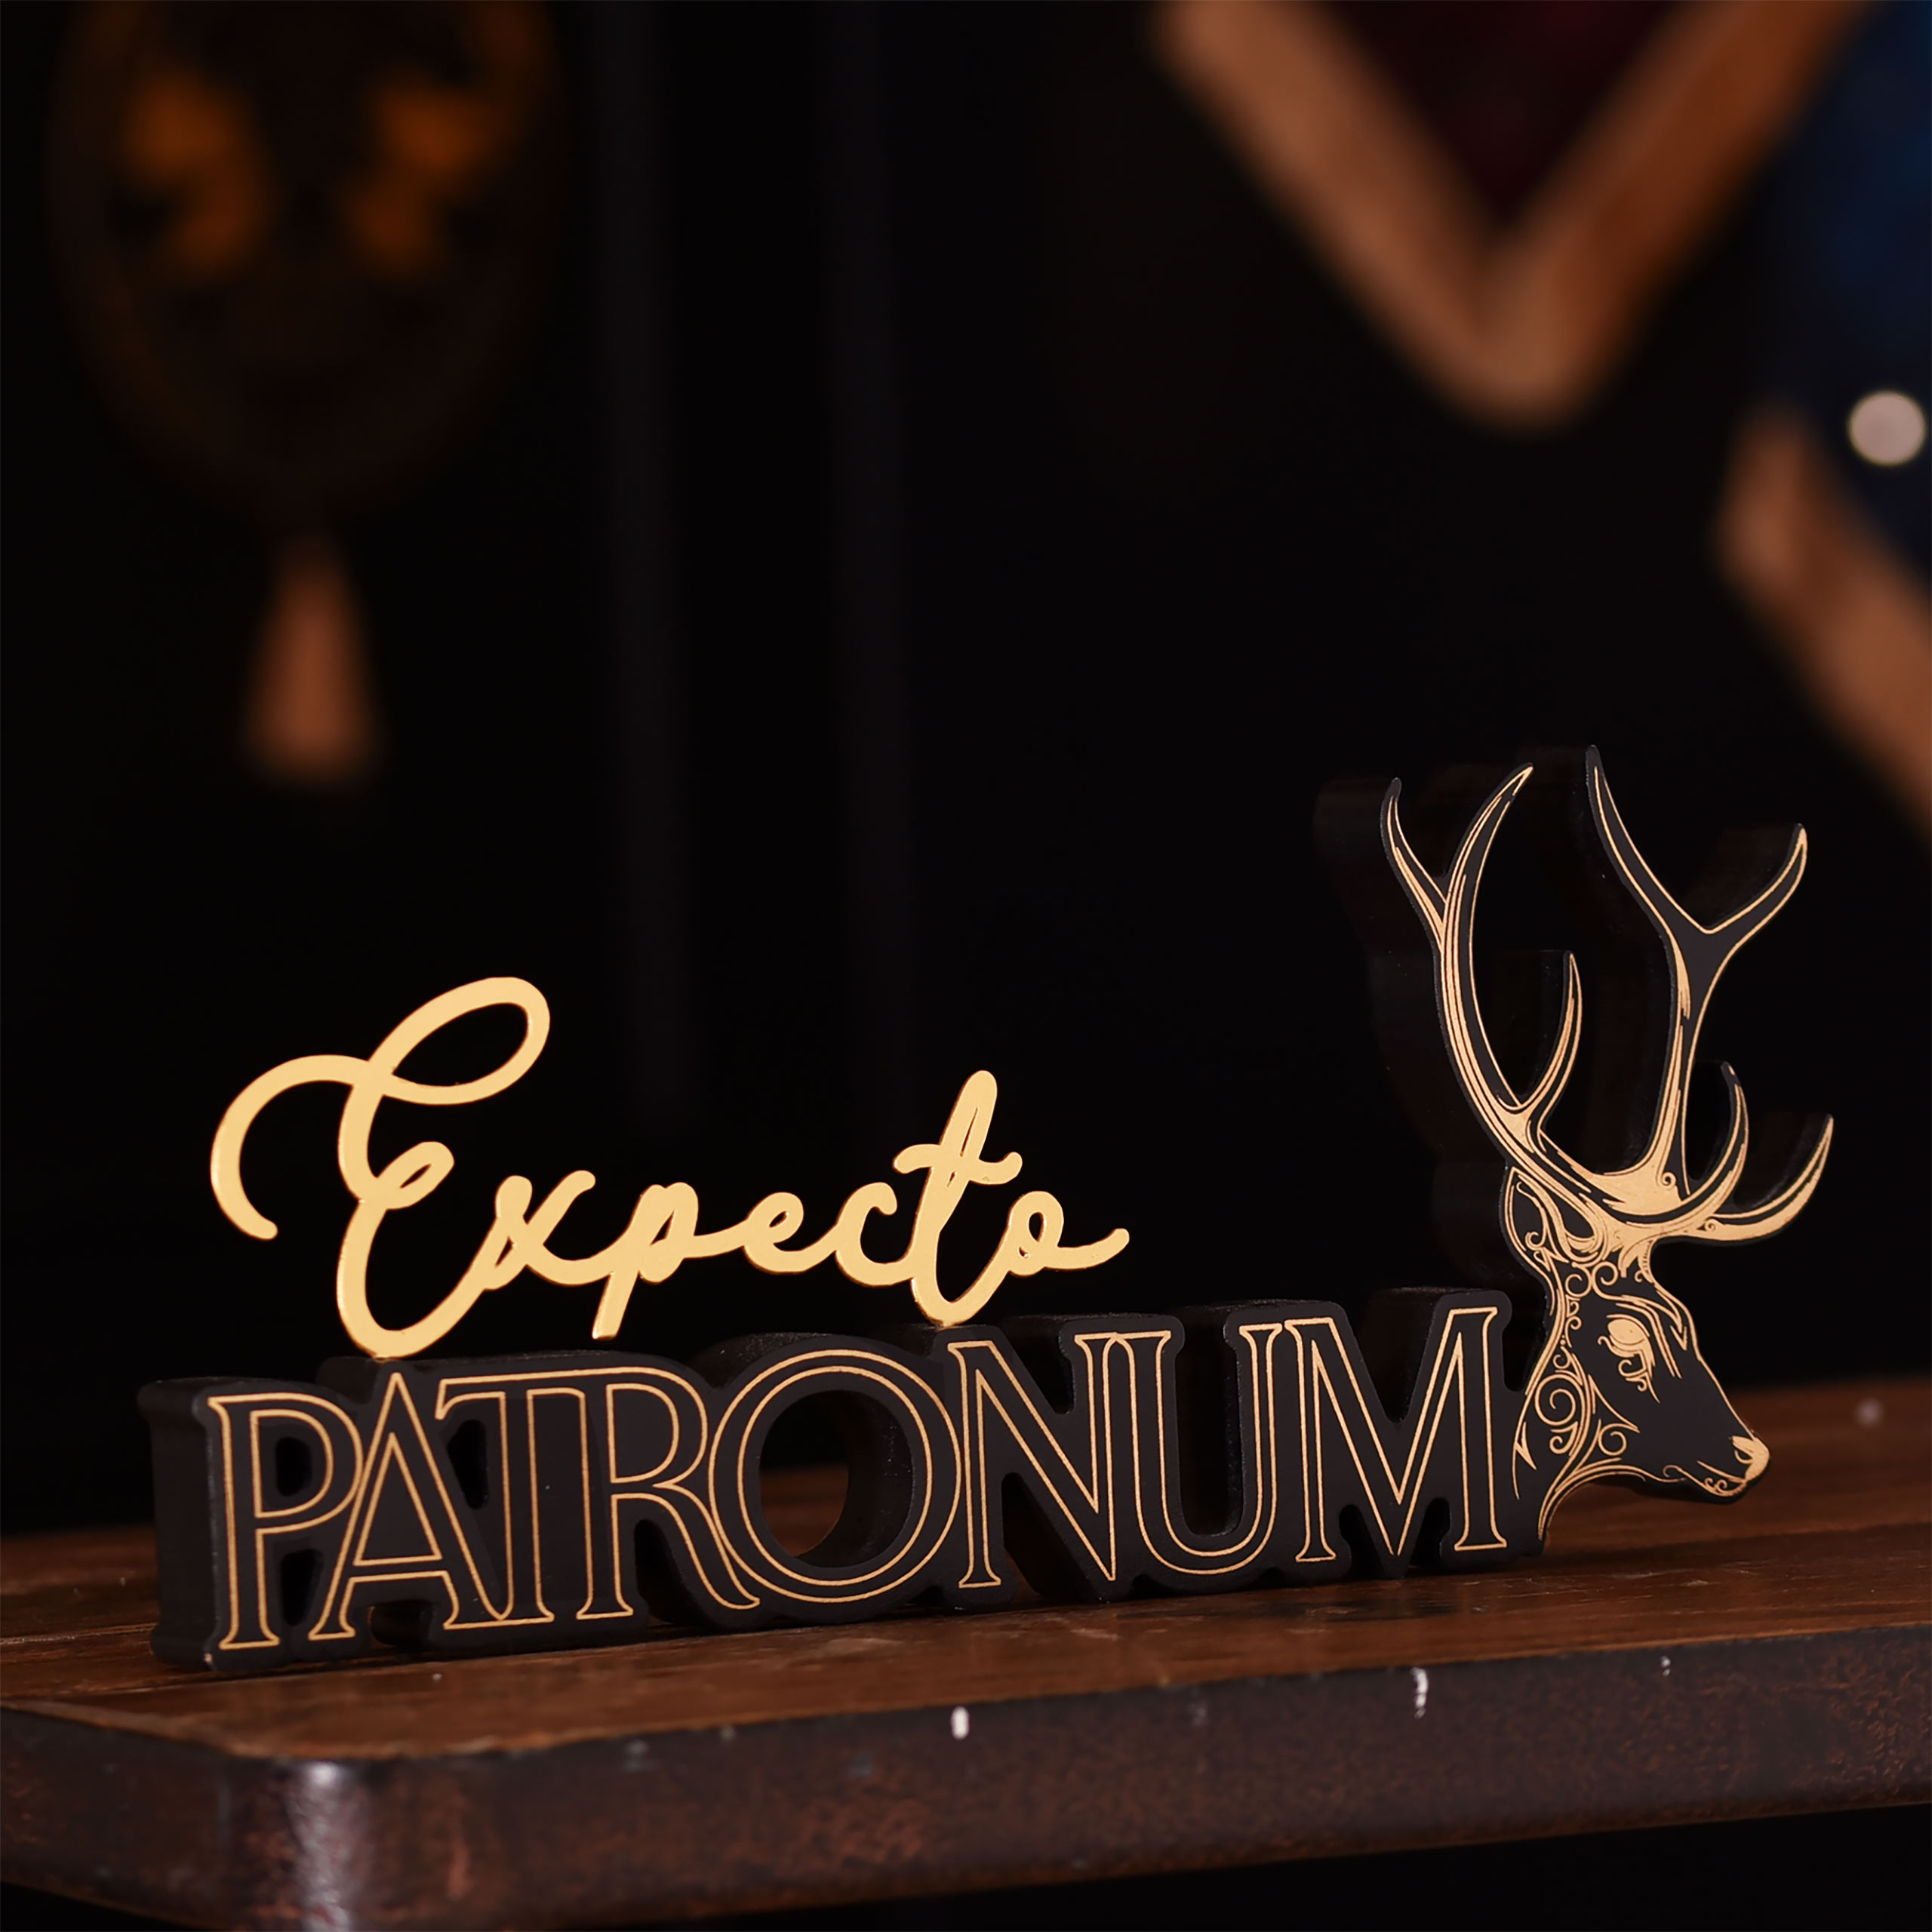 Décoration en bois Expecto Patronum - Harry Potter